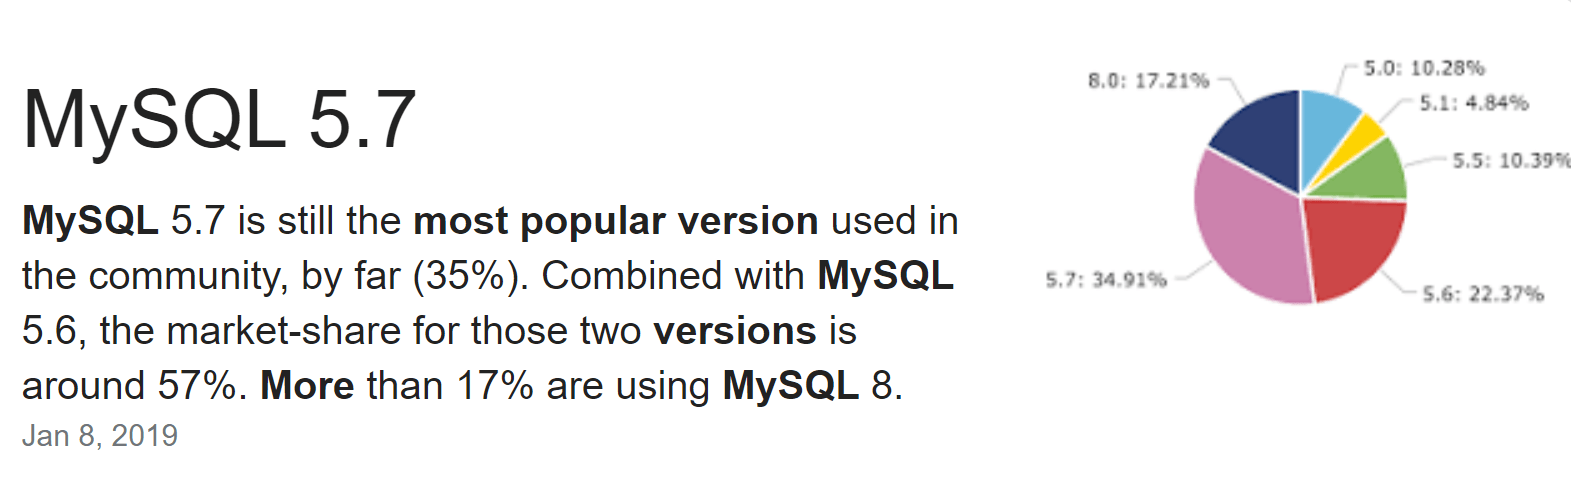 Configuración de MySQL 5.7